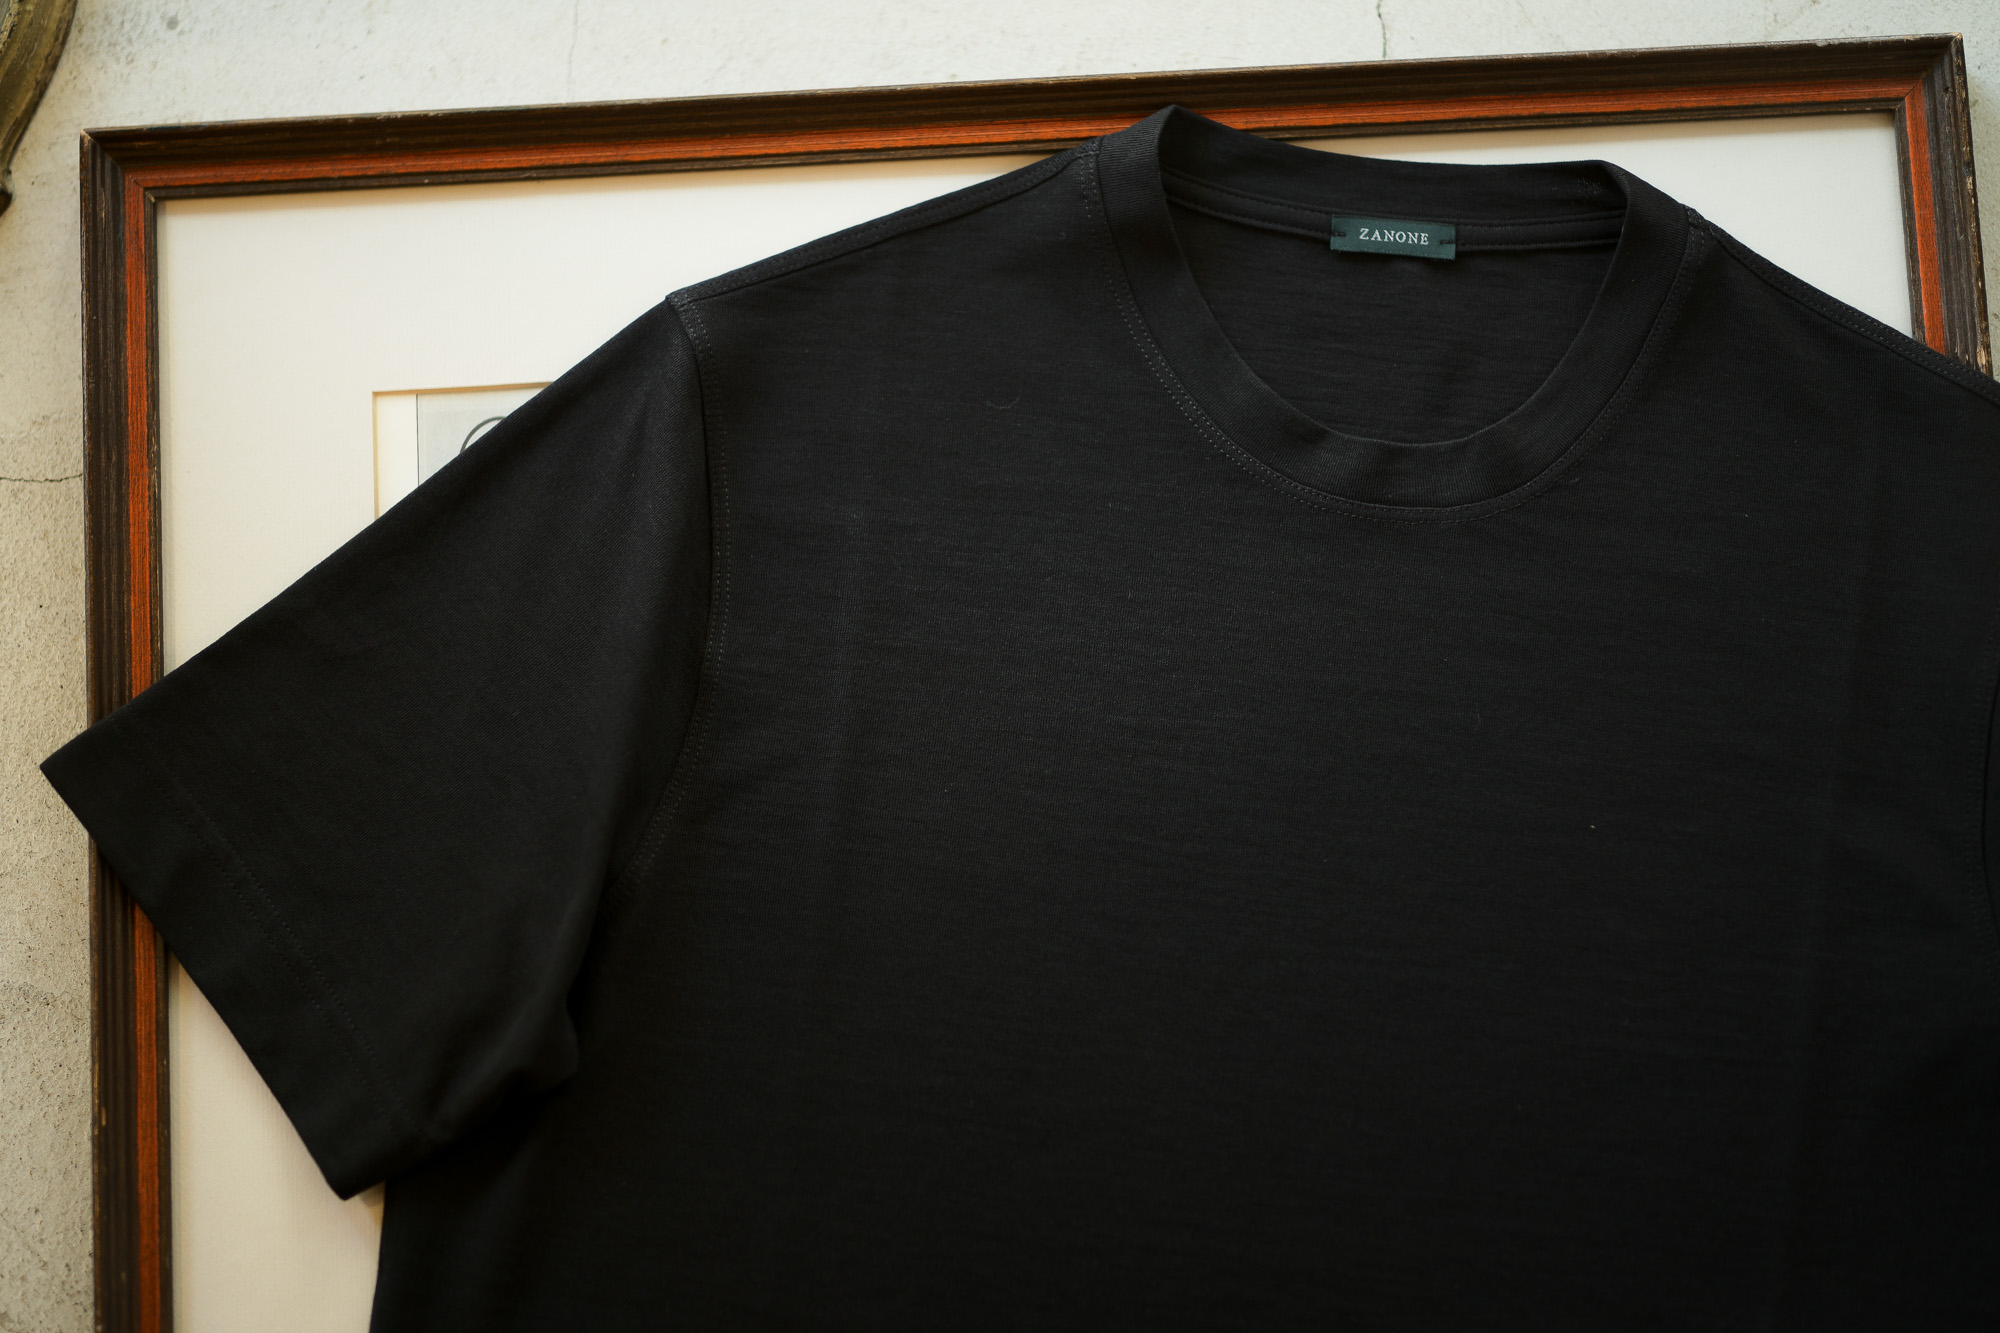 ZANONE (ザノーネ) Crew Neck T-shirt (クルーネックTシャツ) ice cotton アイスコットン Tシャツ BLACK (ブラック・Z0015) MADE IN ITALY(イタリア製) 2019 春夏新作 愛知 名古屋 altoediritto アルトエデリット